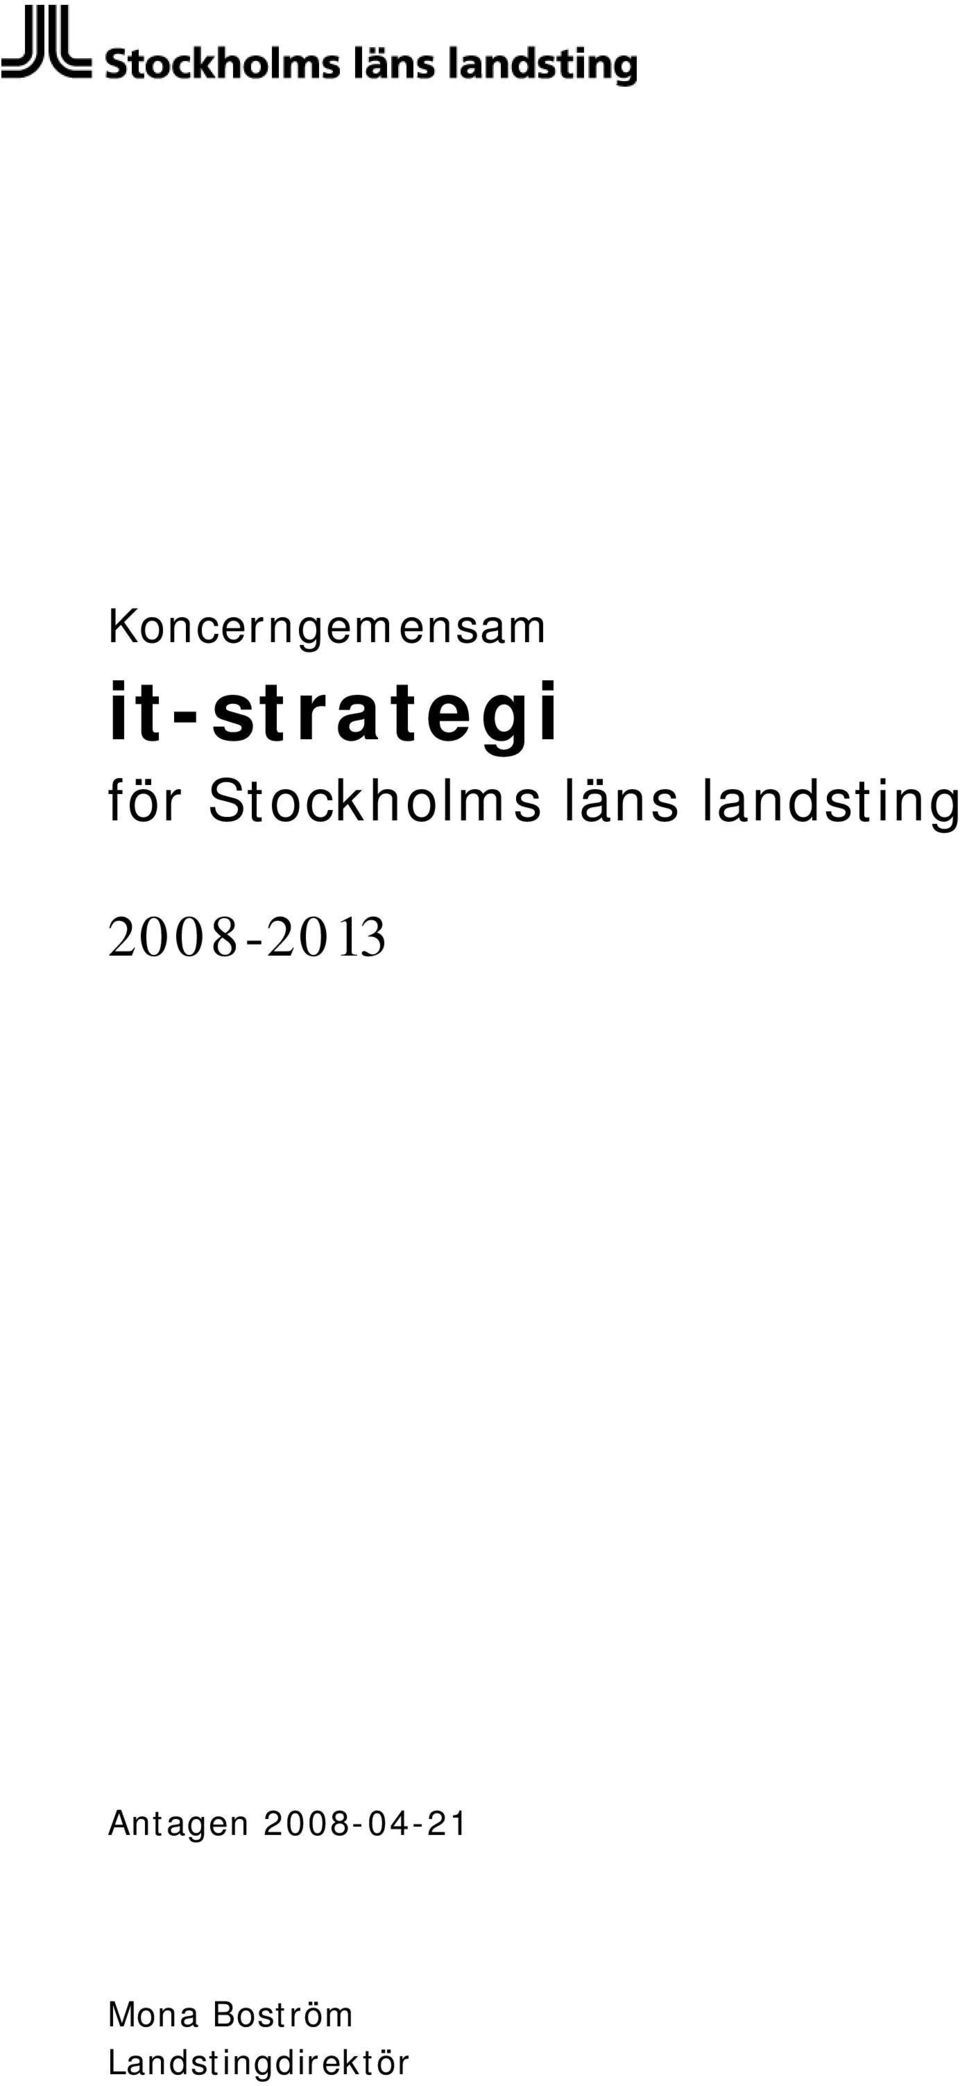 2008-2013 Antagen 2008-04-21